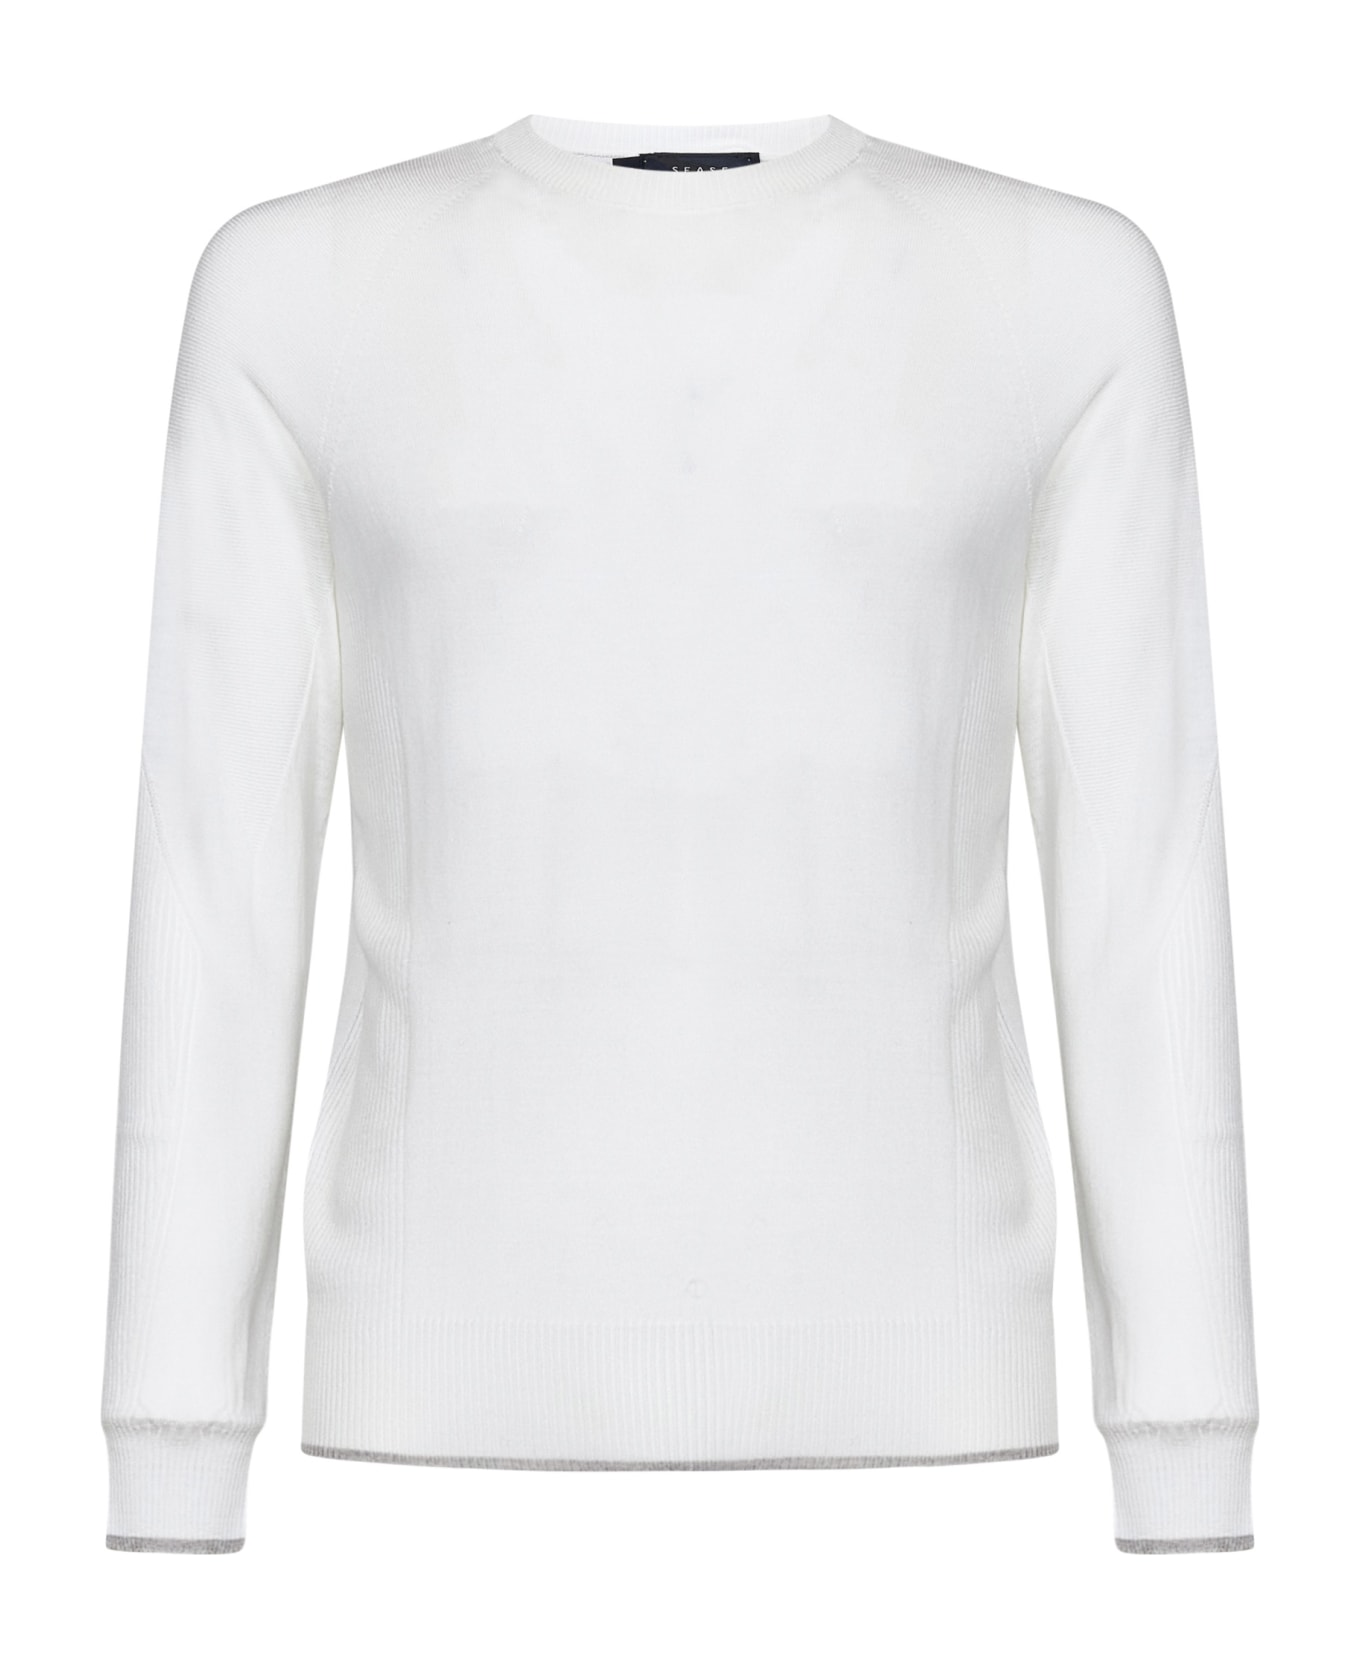 Sease Whole Round Summer Sweater - White ニットウェア